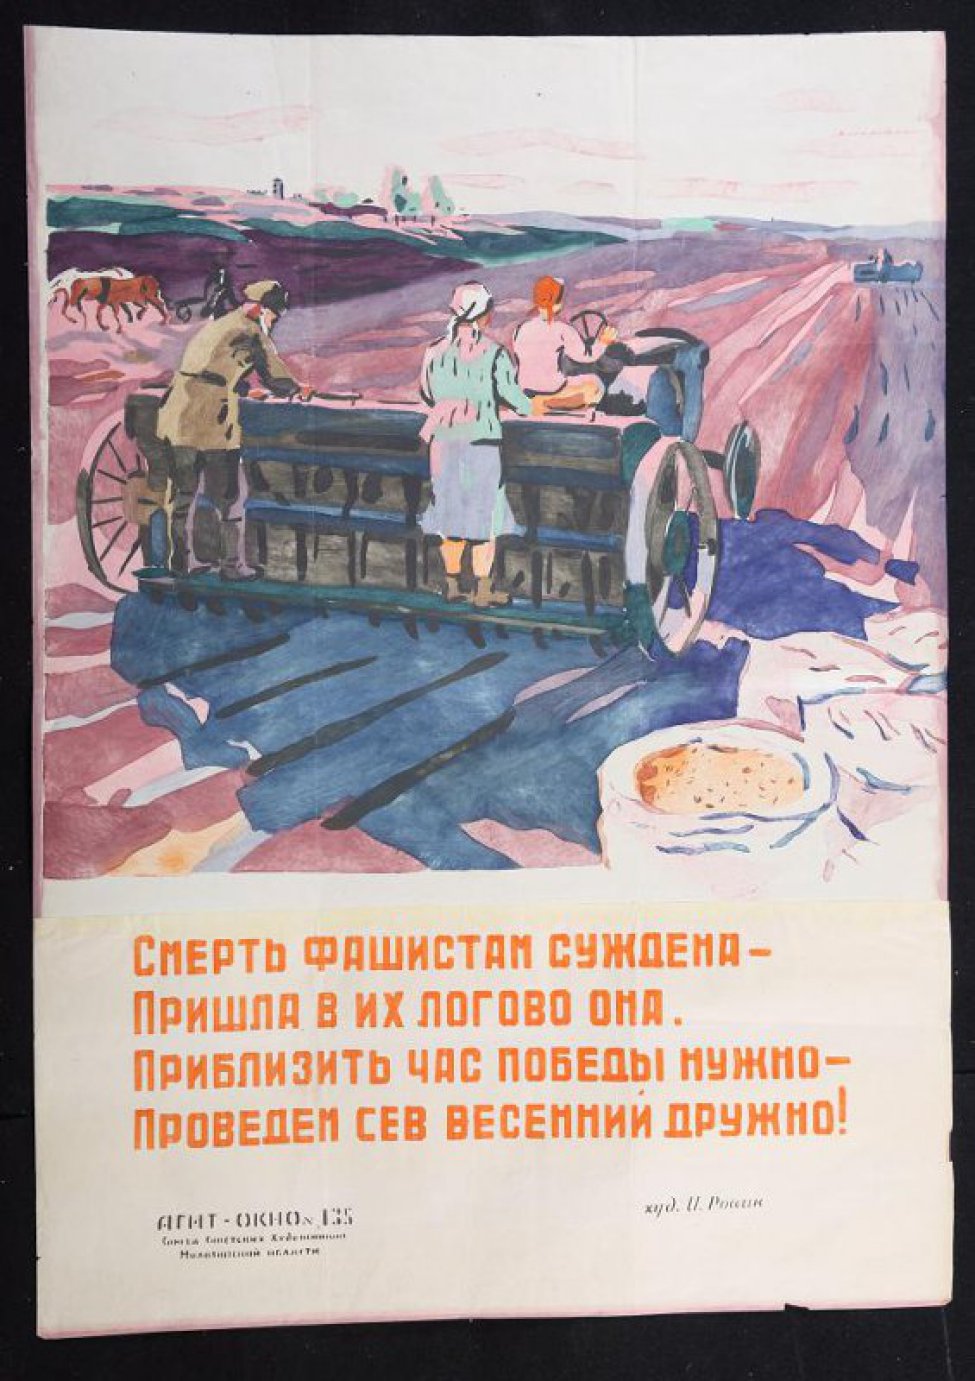 Изображено: по полю едет сеялка, на которой  работают мужчина и женщина, стоят мешки с зерном, текст: " смерть  фашистам суждена - пришла в их логово она..."